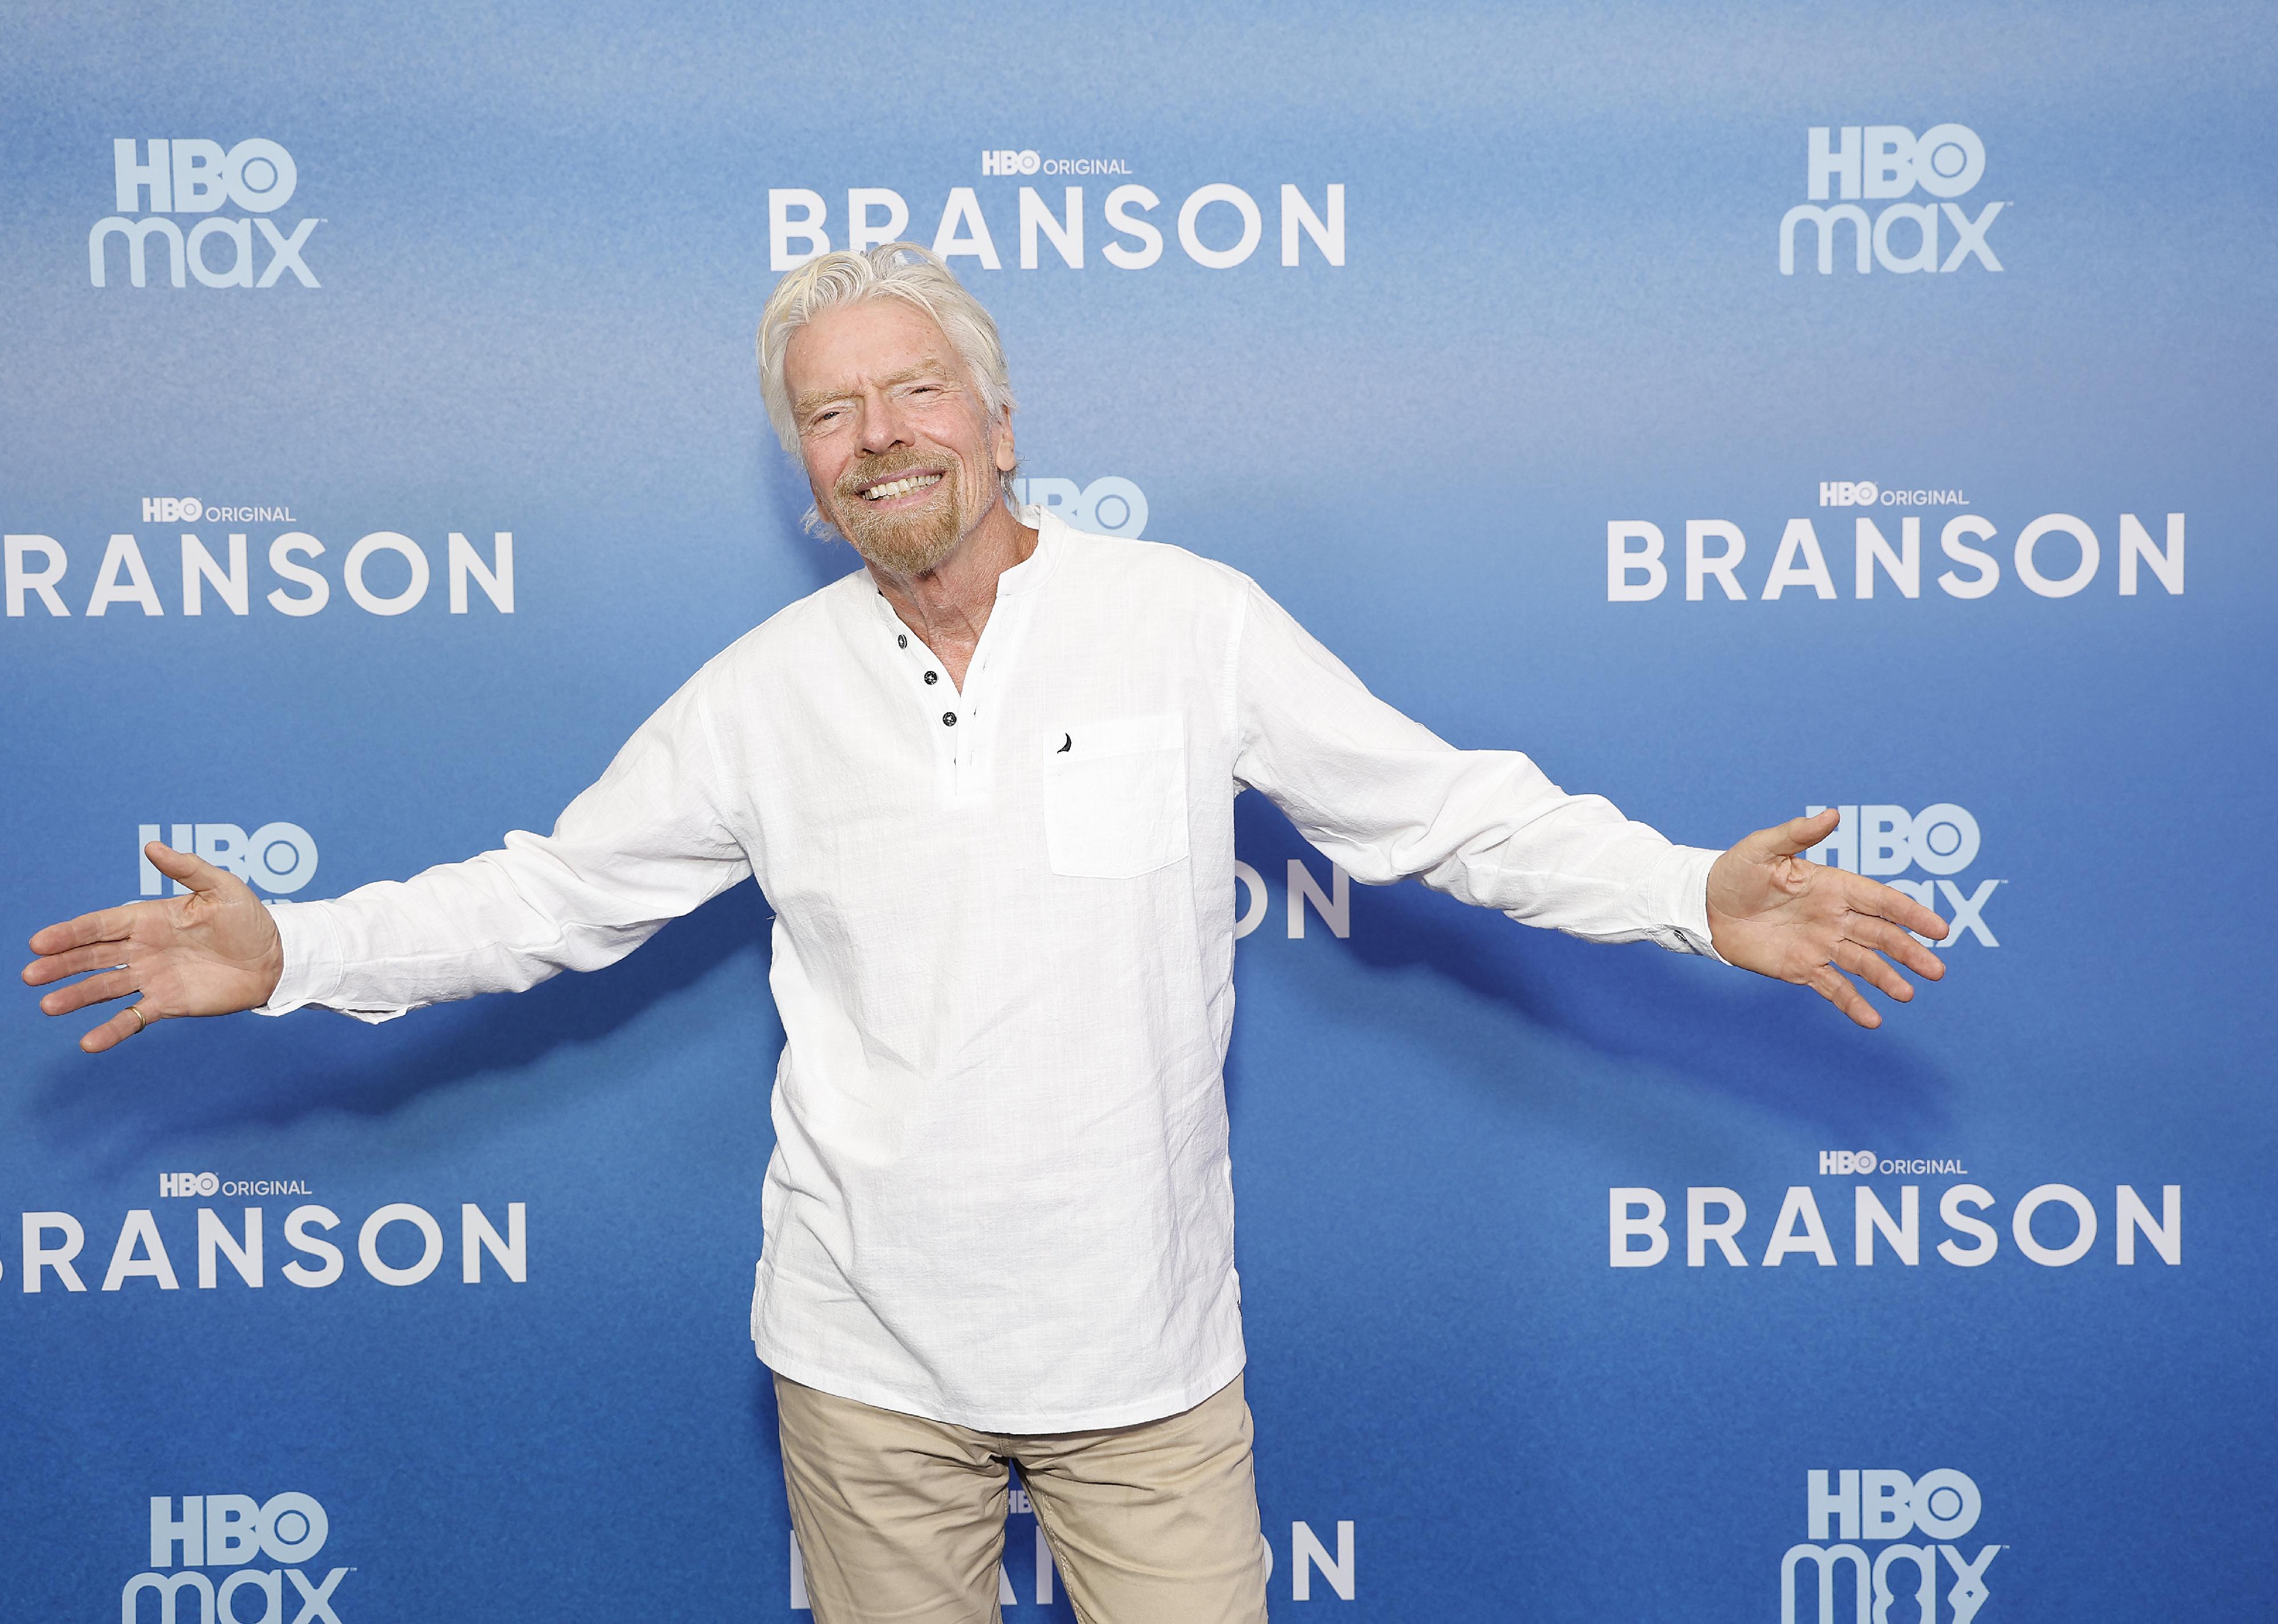 Sir Richard Branson attends "Branson" New York Premiere.